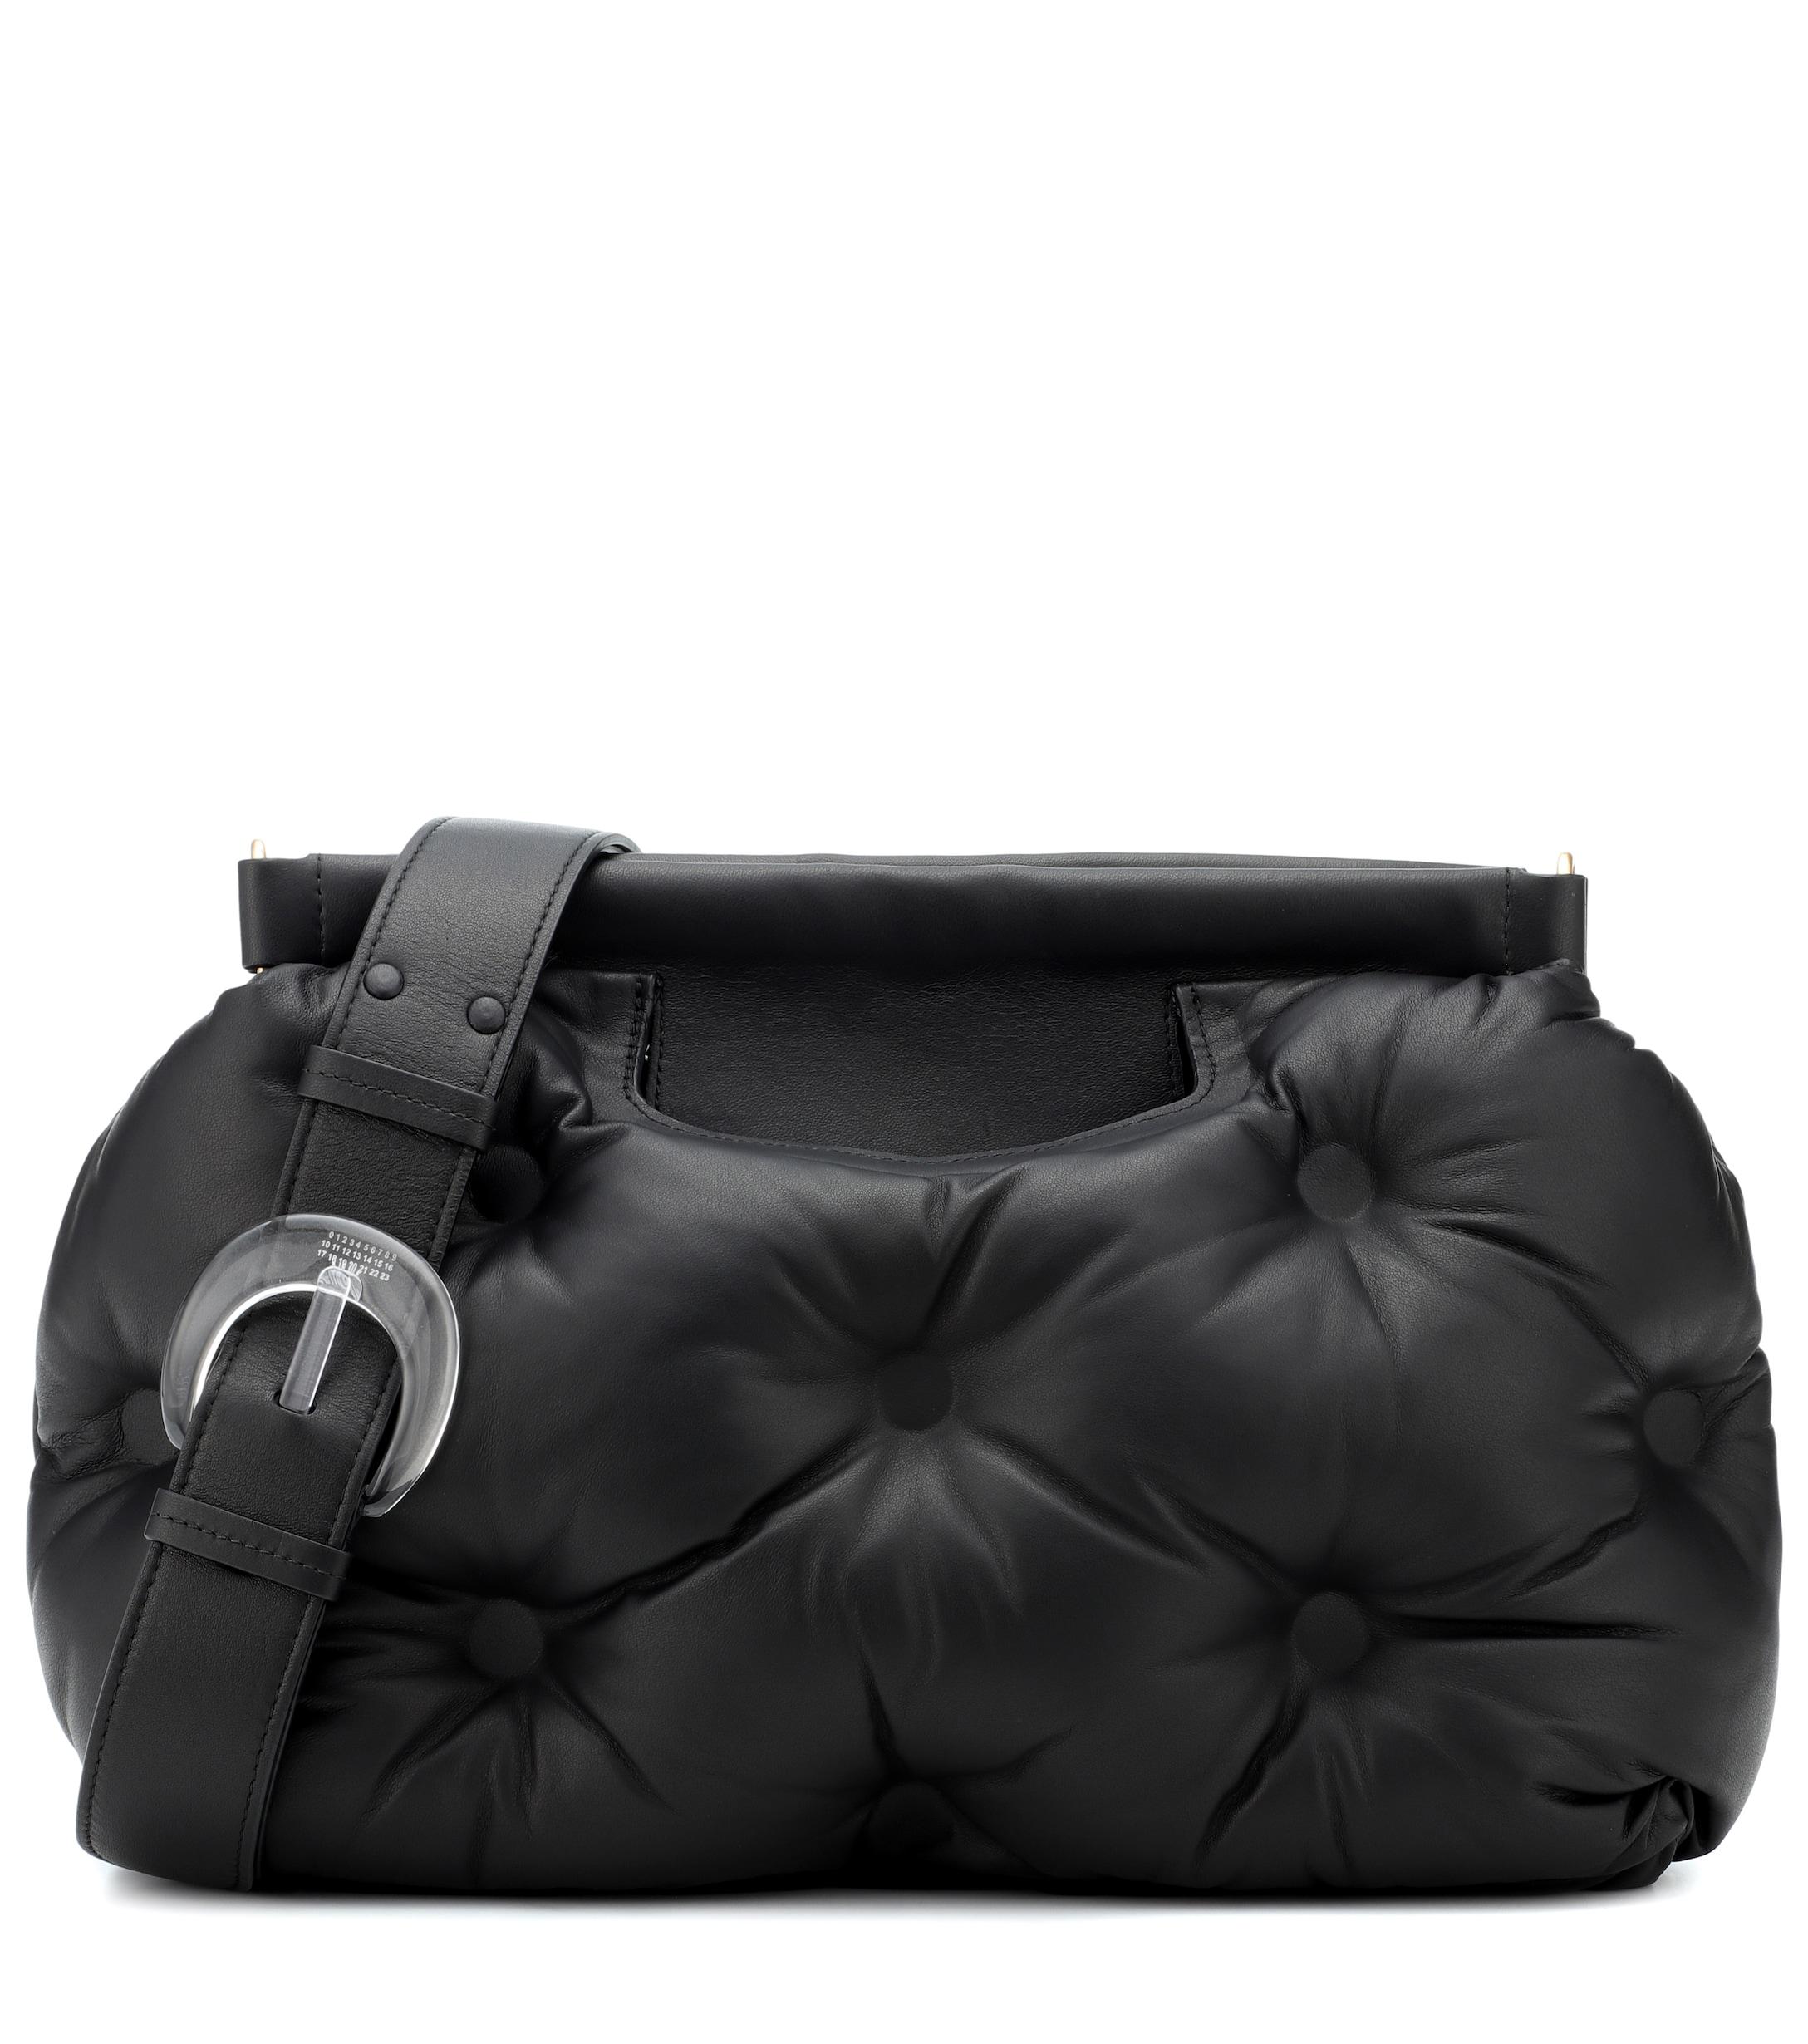 Maison Margiela Glam Slam Quilted Shoulder Bag in Black - Lyst